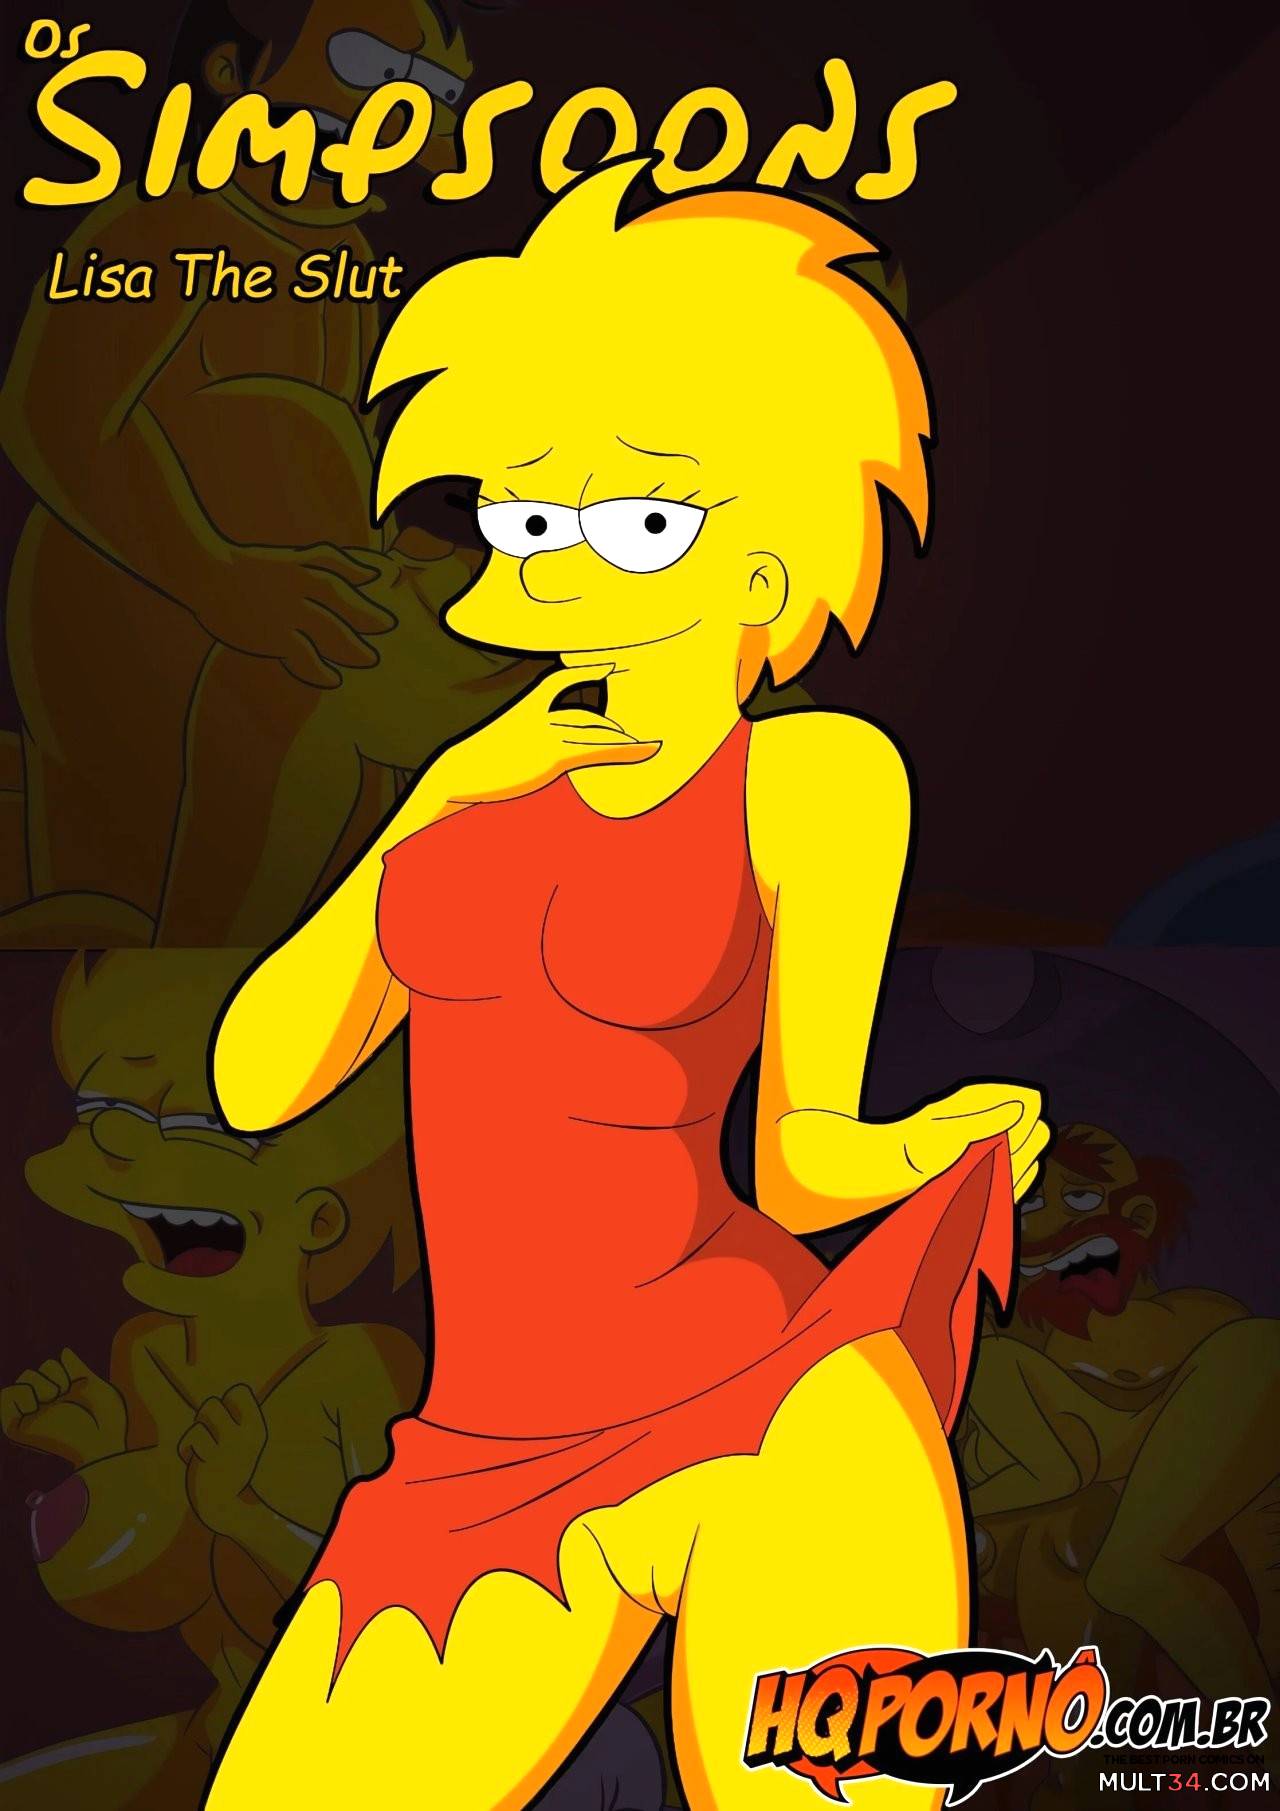 Simpsons Porn Fan Fiction - OS Simpsons 3- Lisa The Slut porn comic - the best cartoon porn comics,  Rule 34 | MULT34